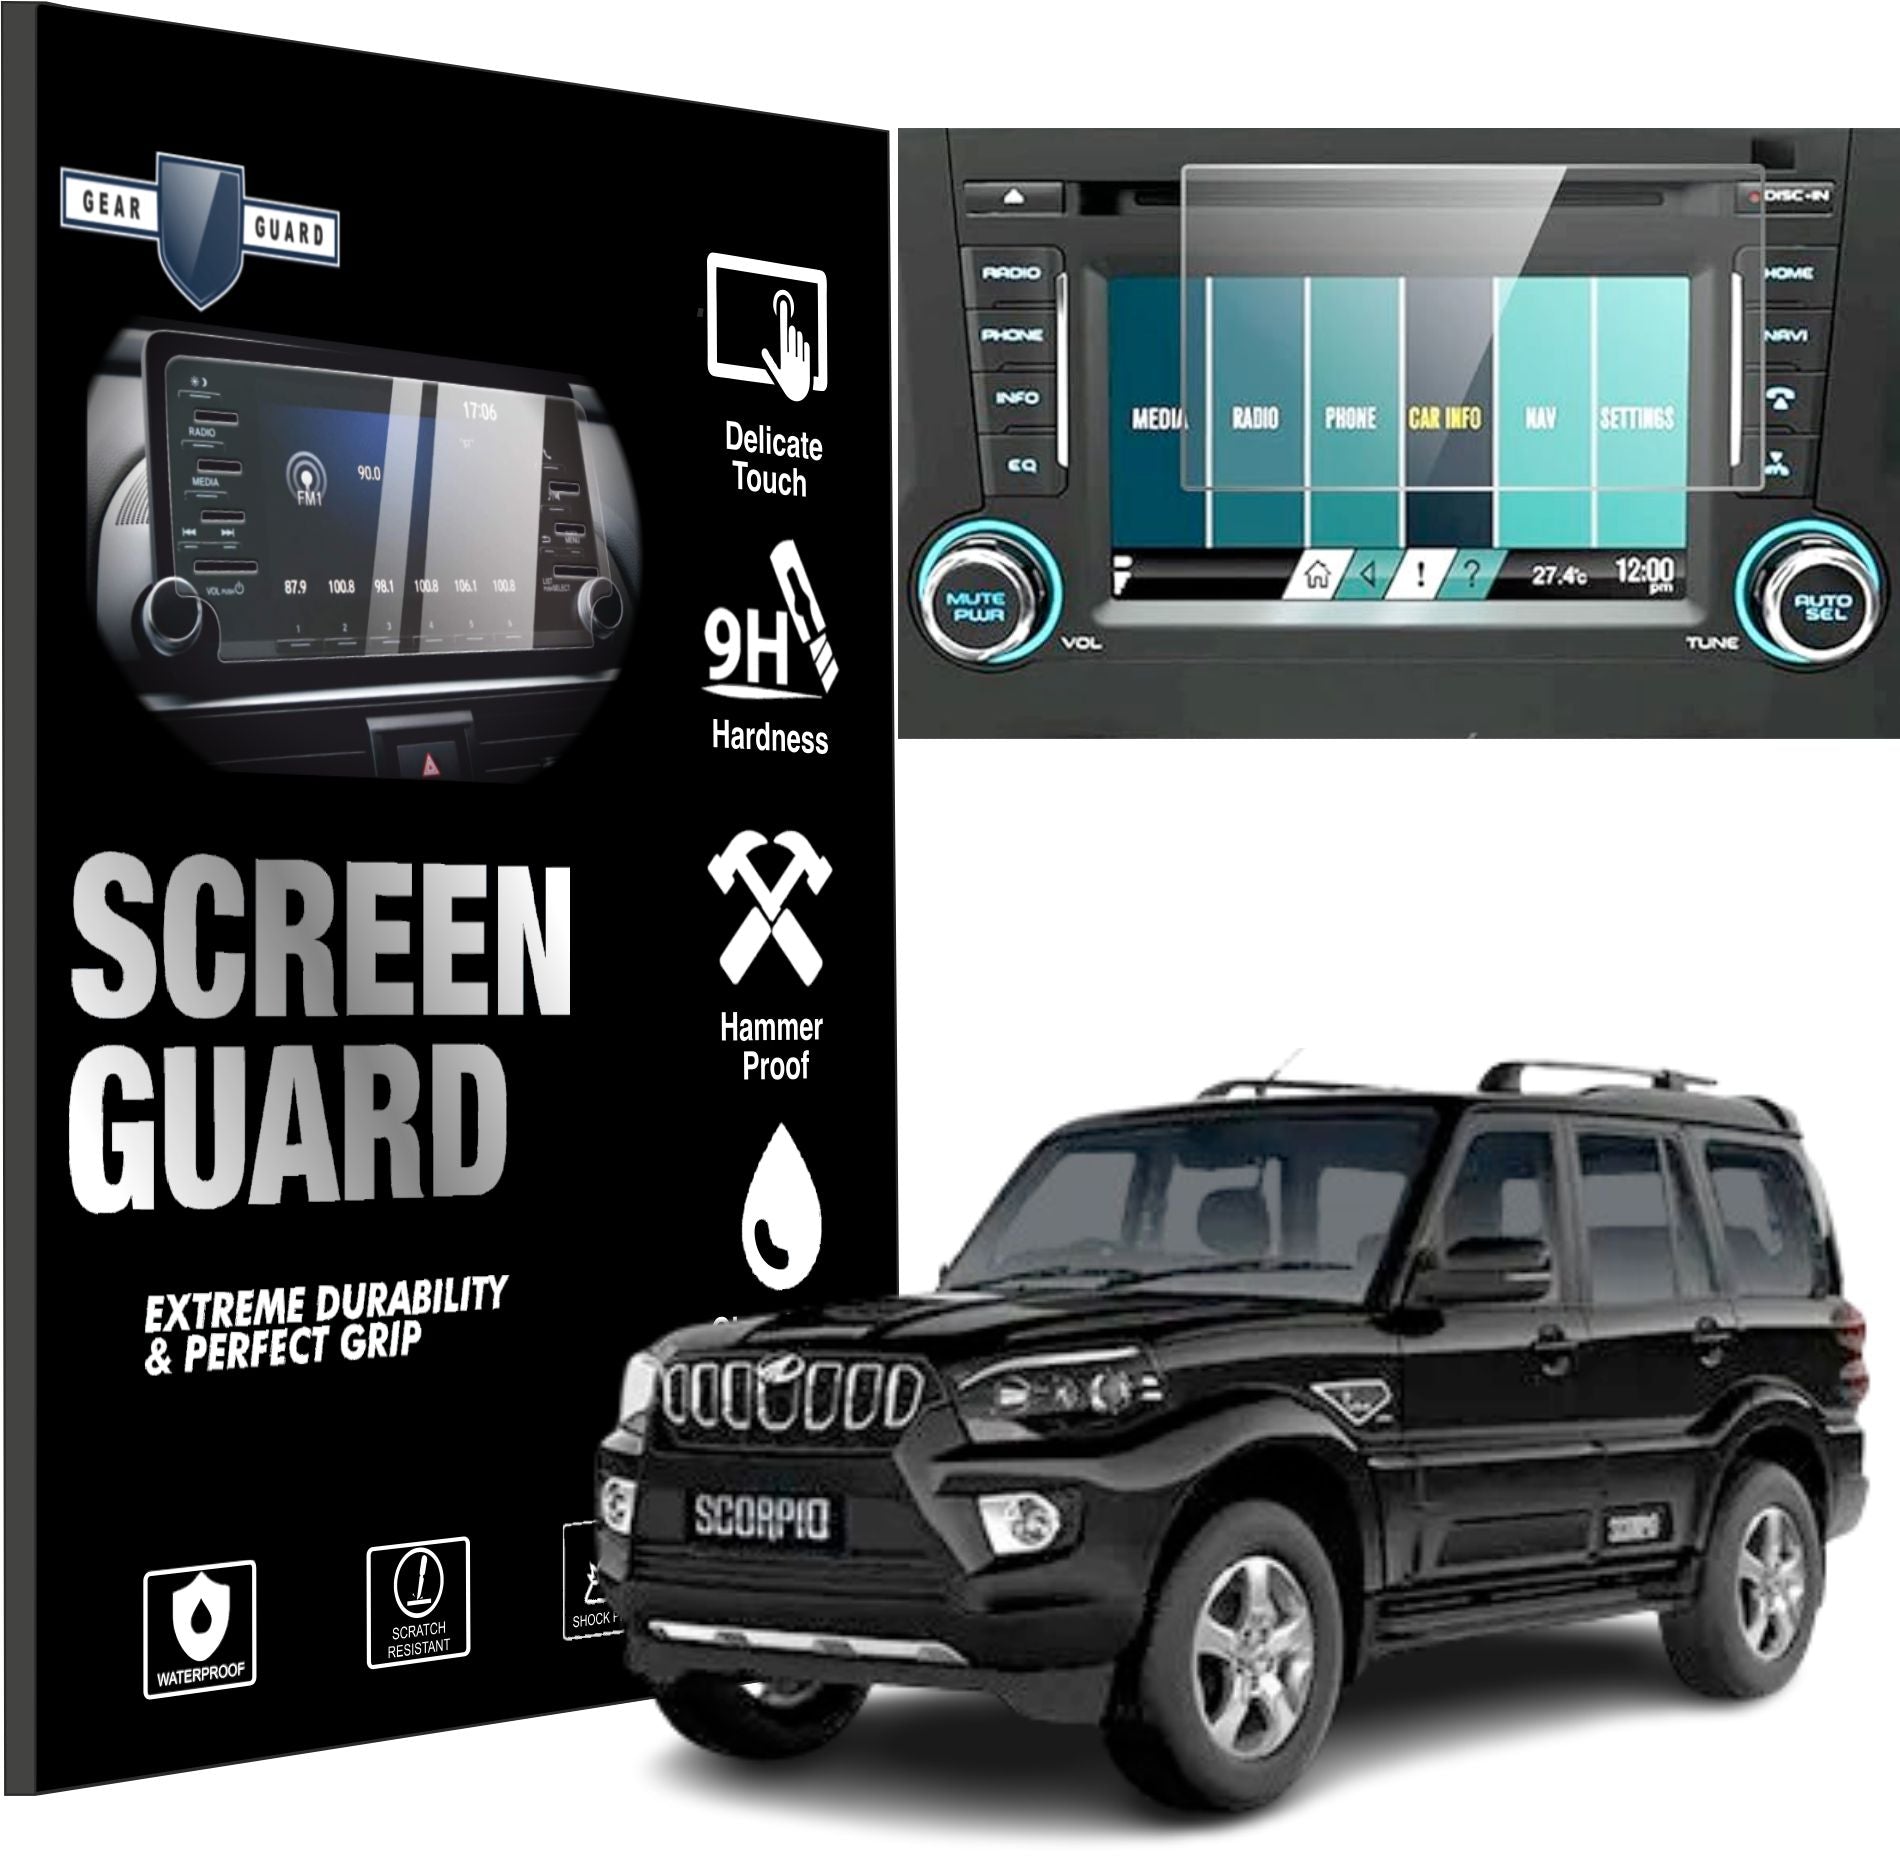 Mahindra Scorpio Accessories Touch Screen Guard -SCORPIO